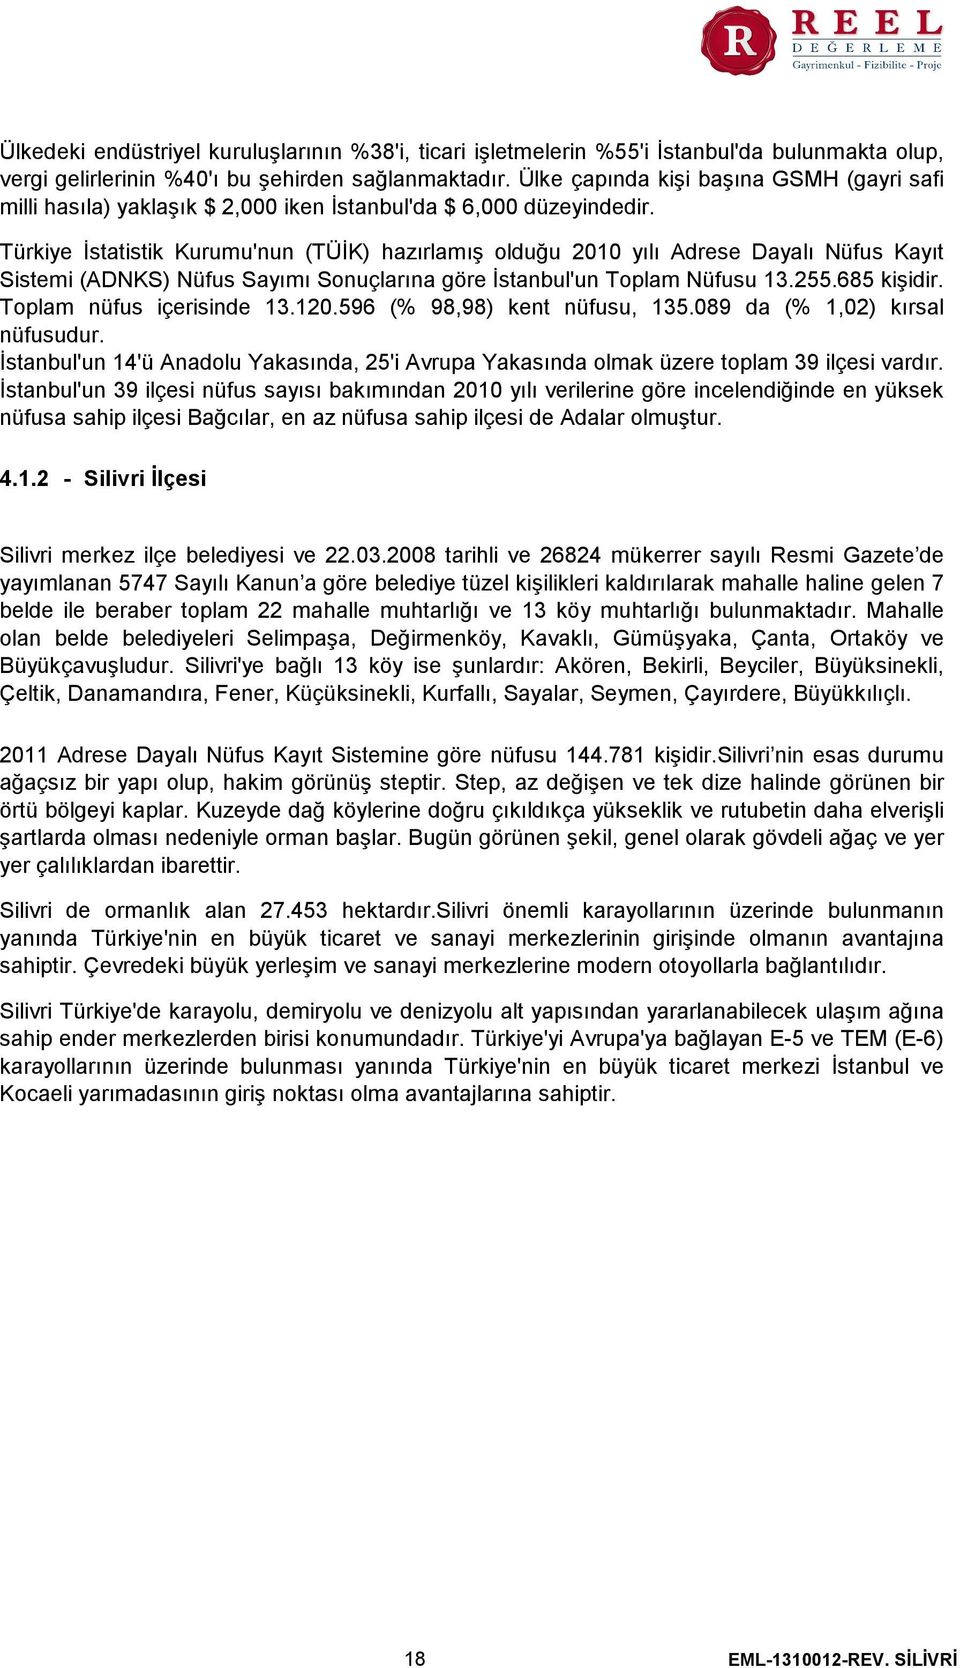 Türkiye İstatistik Kurumu'nun (TÜİK) hazırlamış olduğu 2010 yılı Adrese Dayalı Nüfus Kayıt Sistemi (ADNKS) Nüfus Sayımı Sonuçlarına göre İstanbul'un Toplam Nüfusu 13.255.685 kişidir.